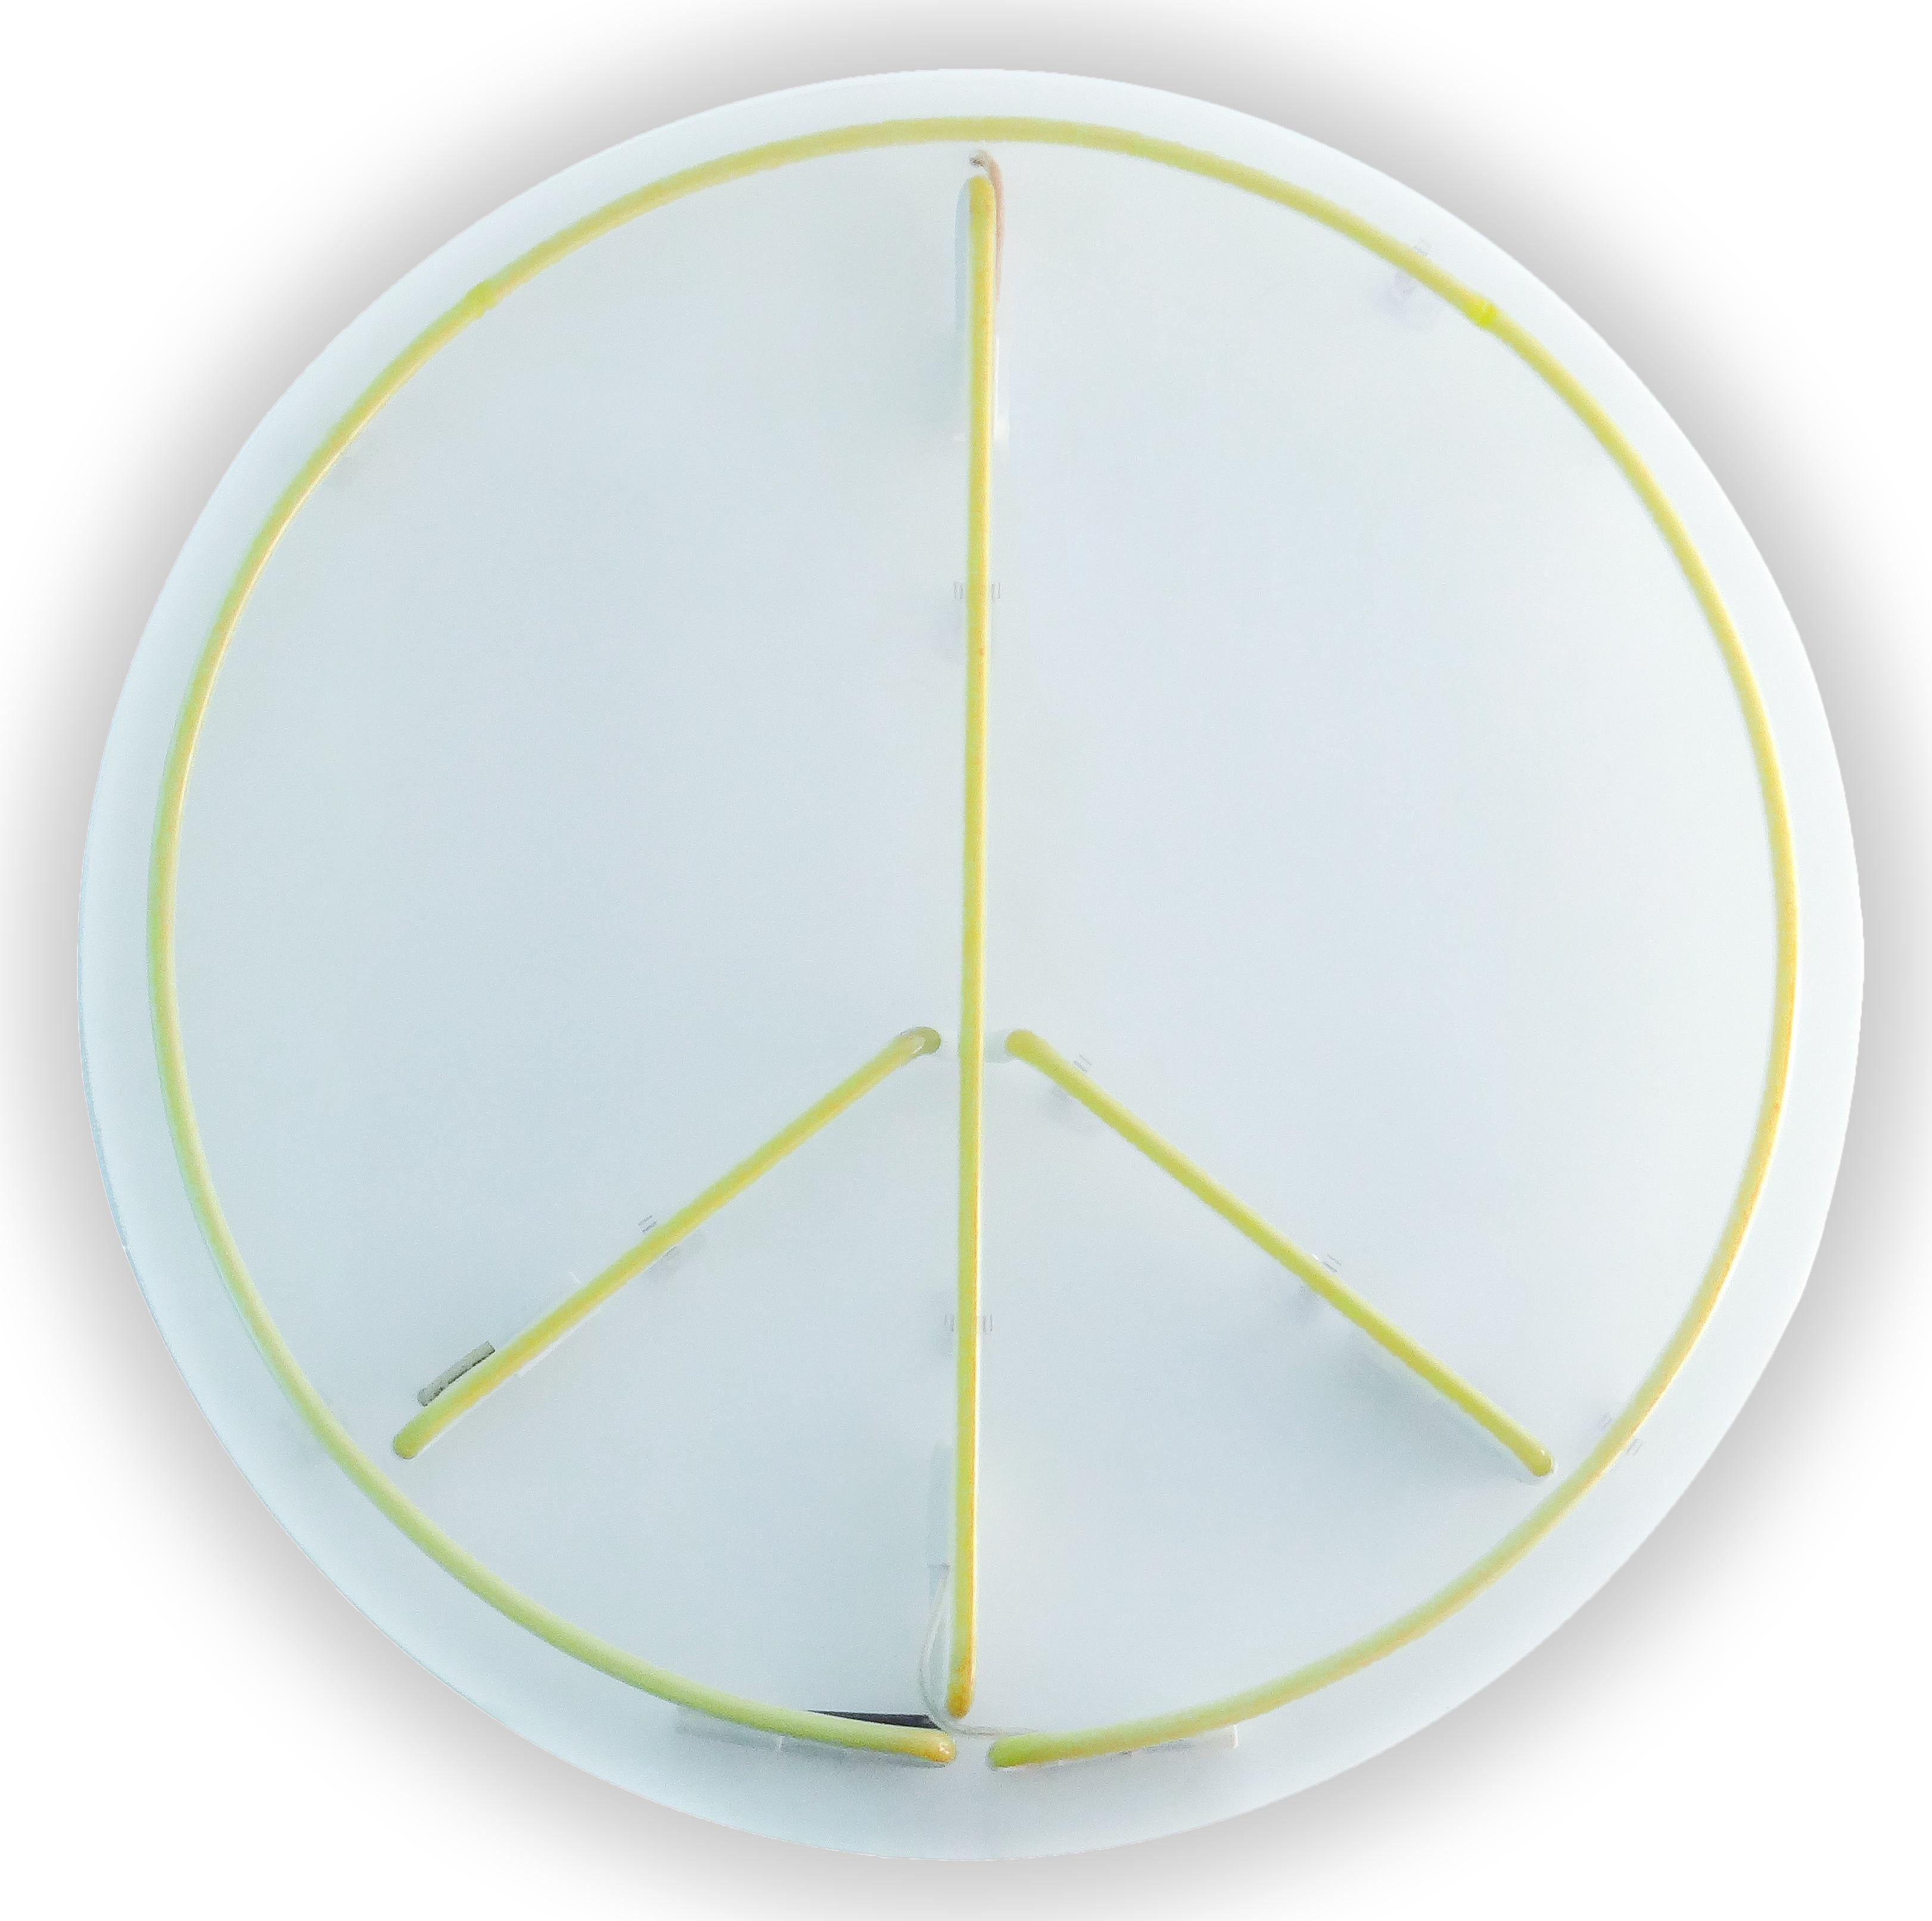 Entworfen im Jahr 2015 produziert, ca. 2016
Gelbes Neon-Weißes Plexiglas

Maße: 36